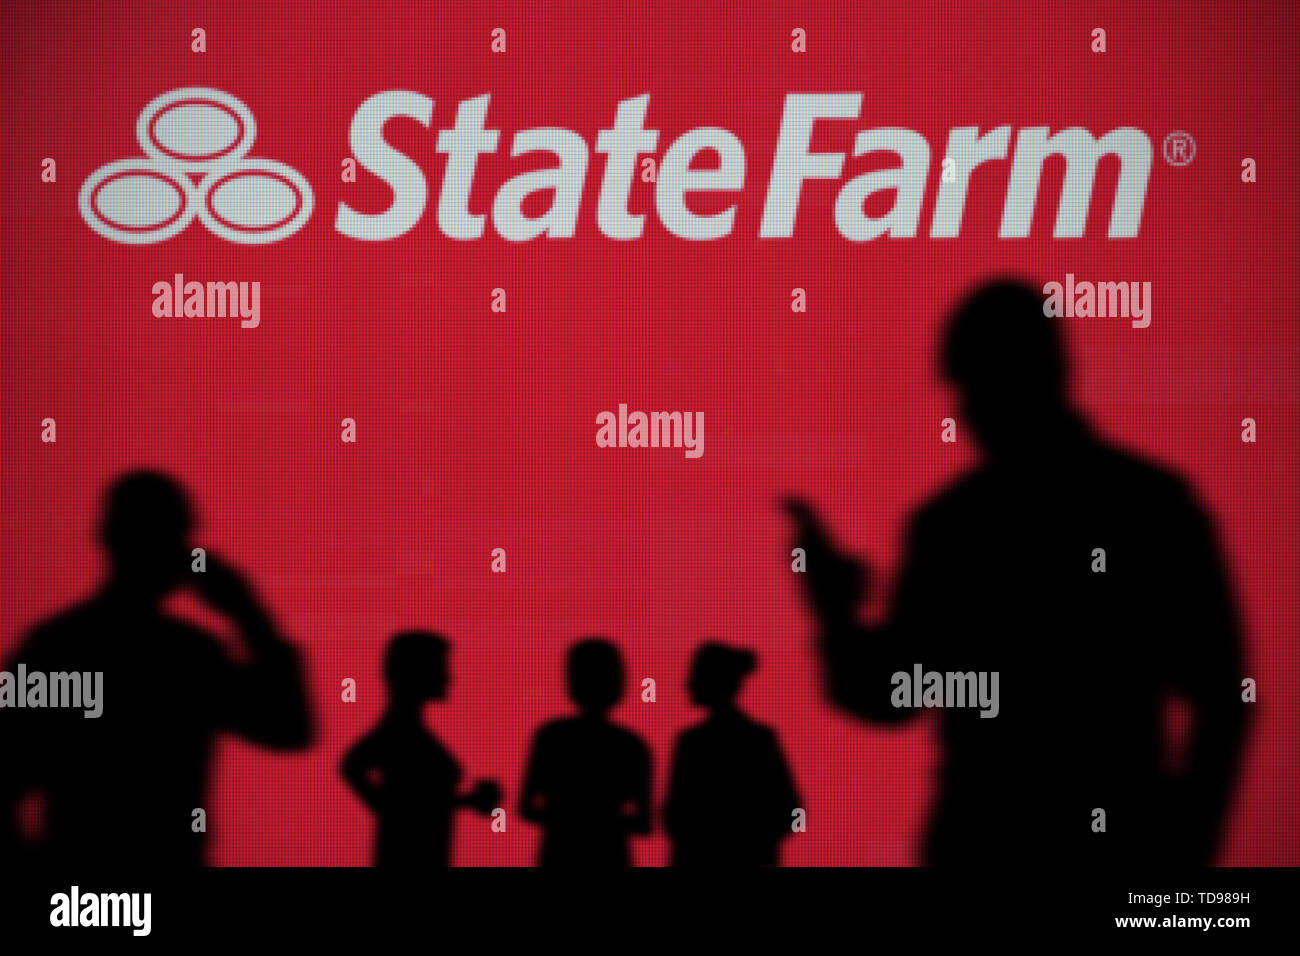 La ferme d'Etat logo est visible sur un écran LED à l'arrière-plan tandis qu'une personne utilise la silhouette d'un smartphone dans l'avant-plan (usage éditorial uniquement) Banque D'Images